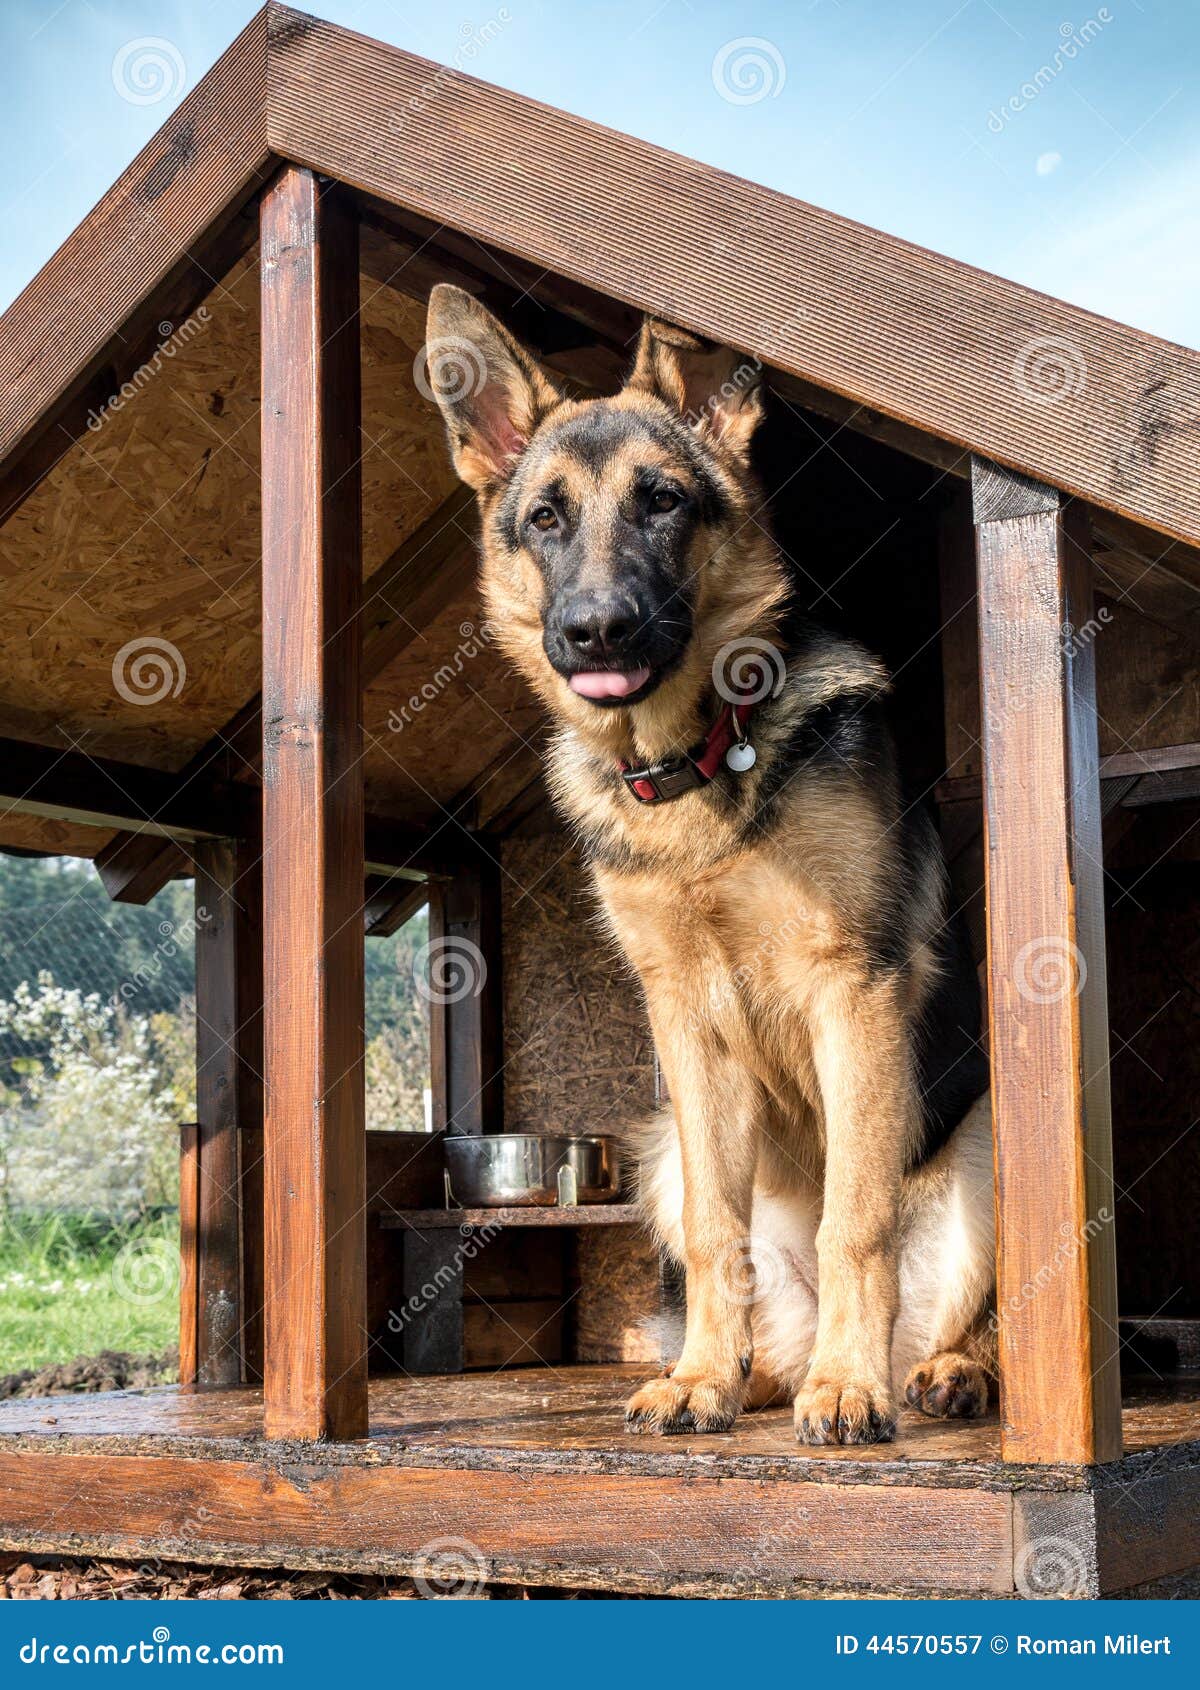 german shepherd in its kennel